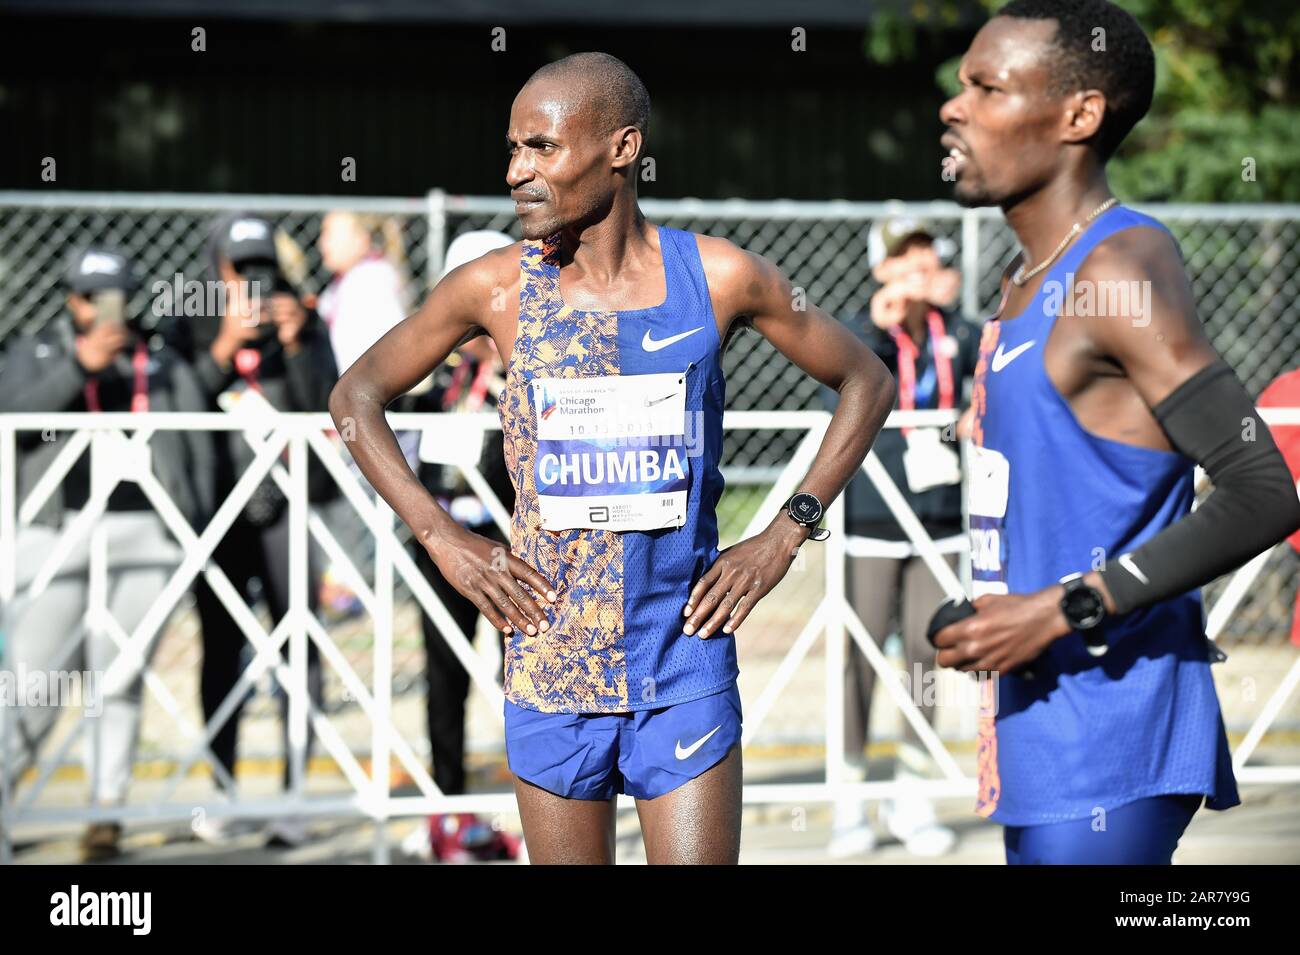 Chicago, Illinois, Stati Uniti. Dickson Chumba del Kenya guardando indietro alla linea di arrivo che aveva appena attraversato alla Maratona di Chicago del 2019. Foto Stock